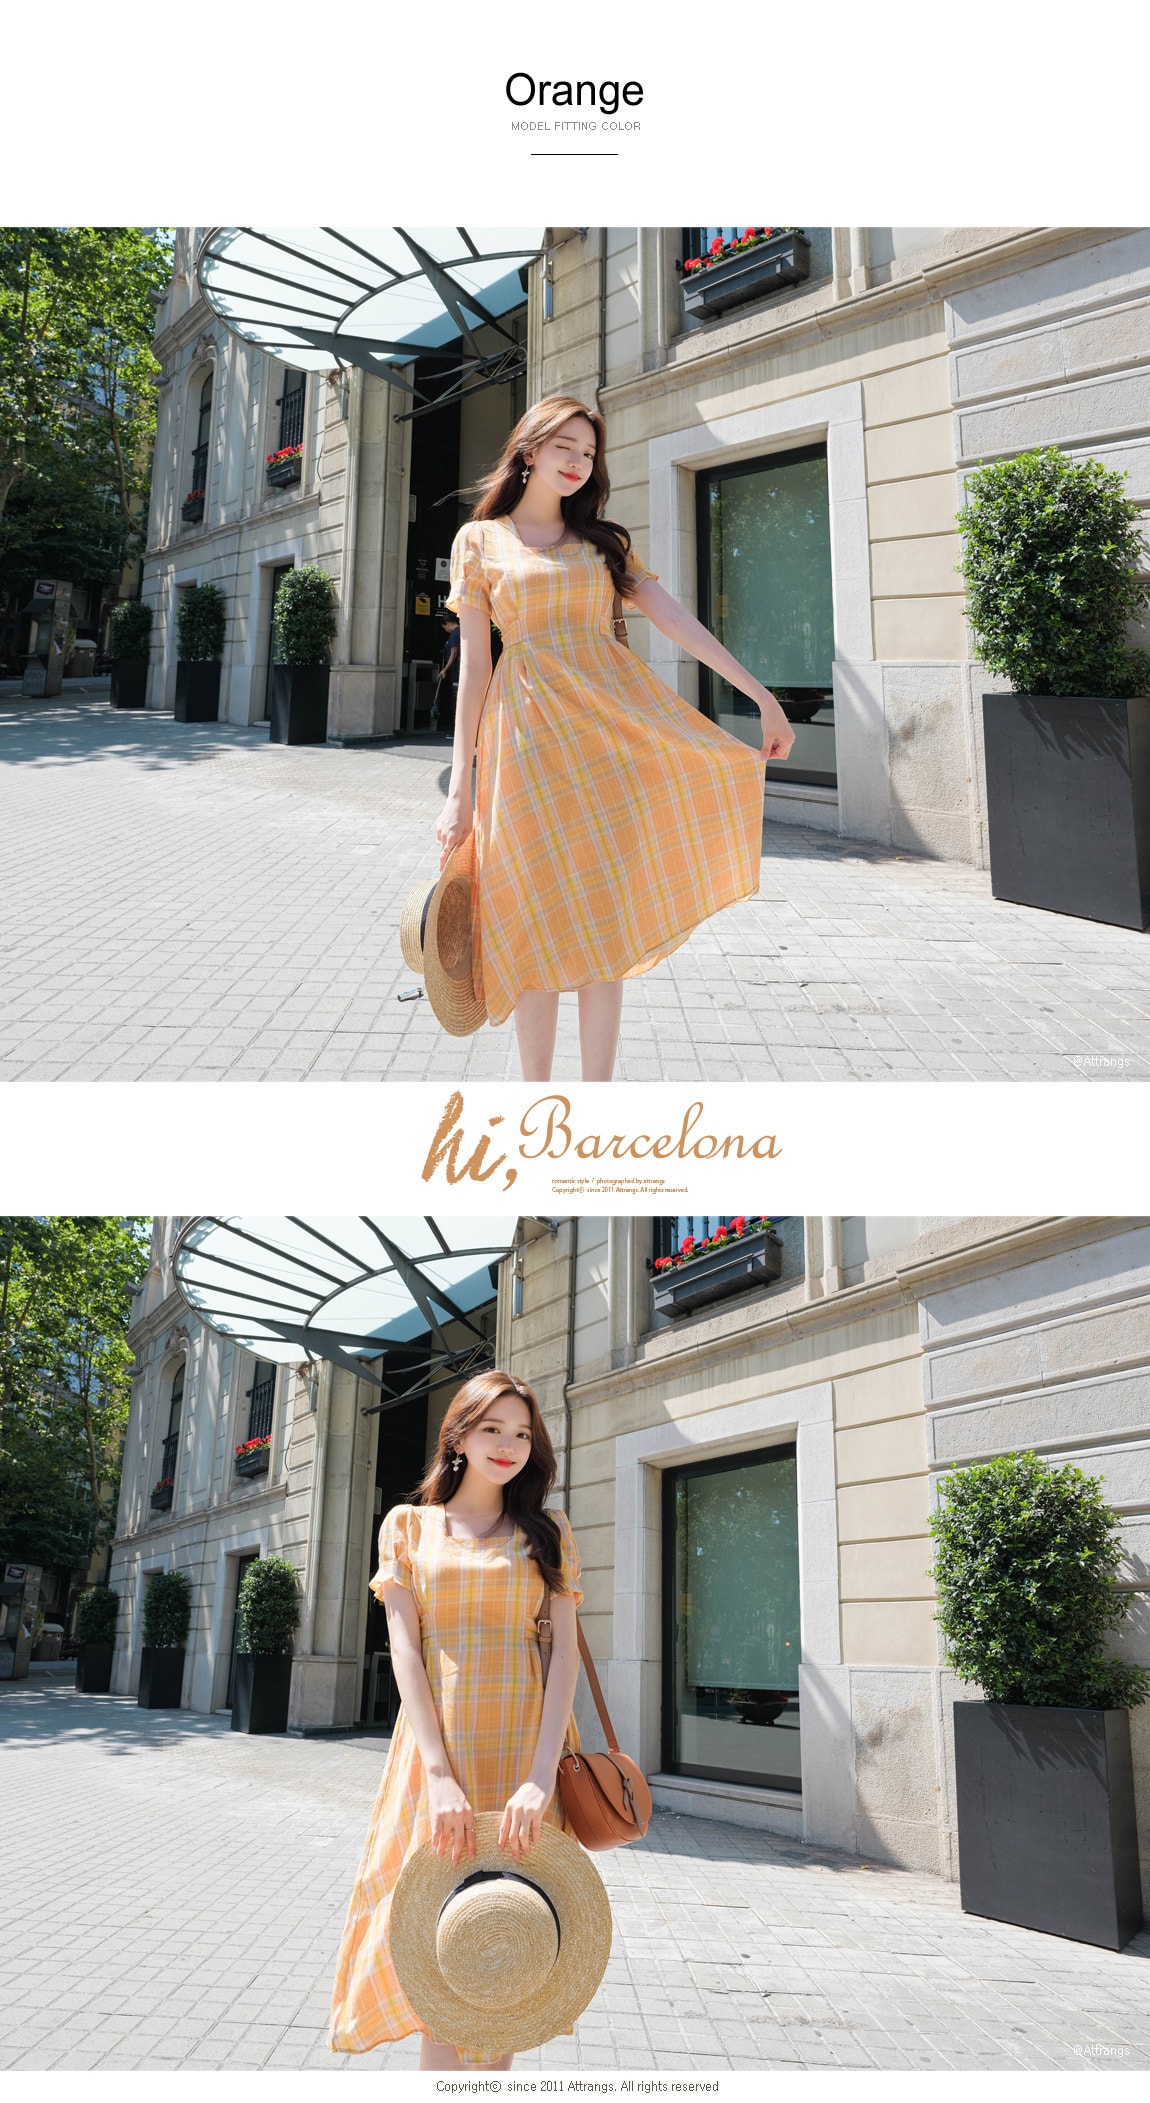 【韩国直邮】ATTRANGS 复古亮色格纹高腰系带显瘦连衣裙 橙色 均码